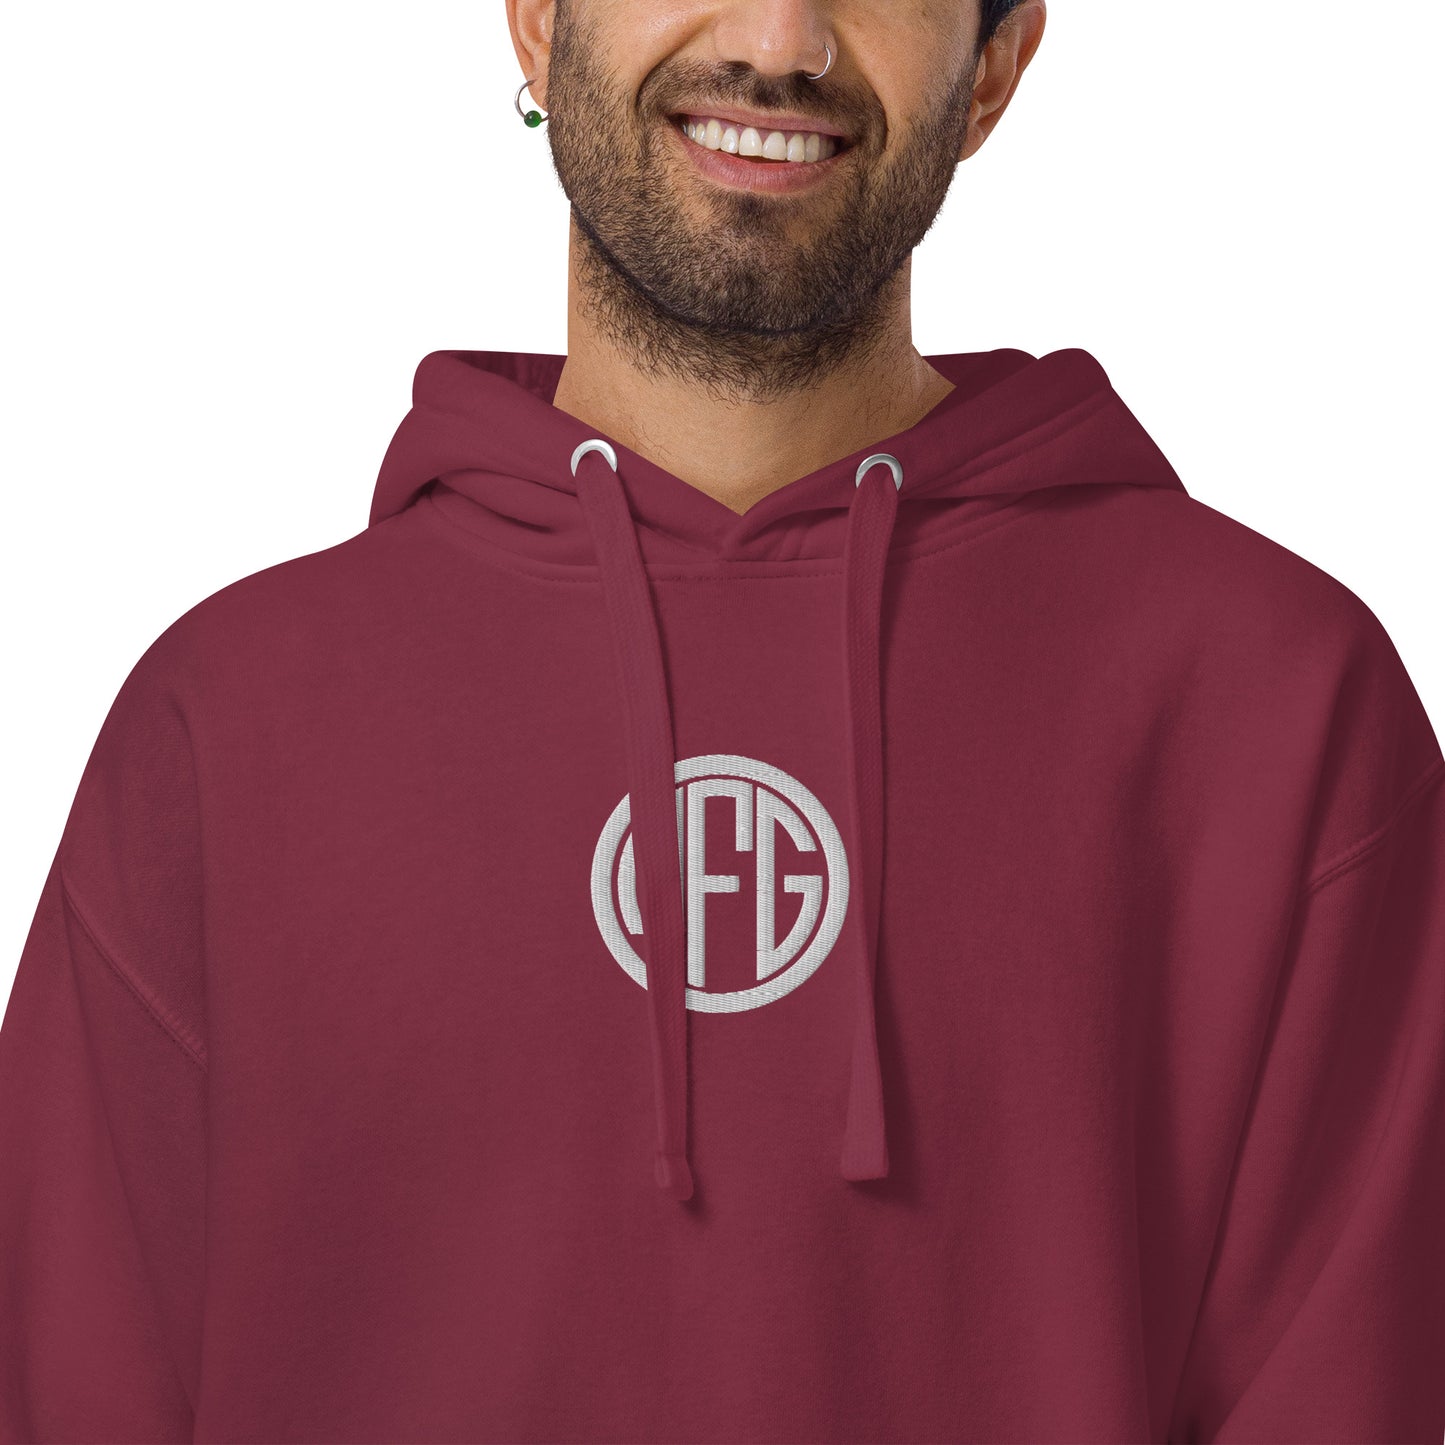 MFG Logo Hoodie